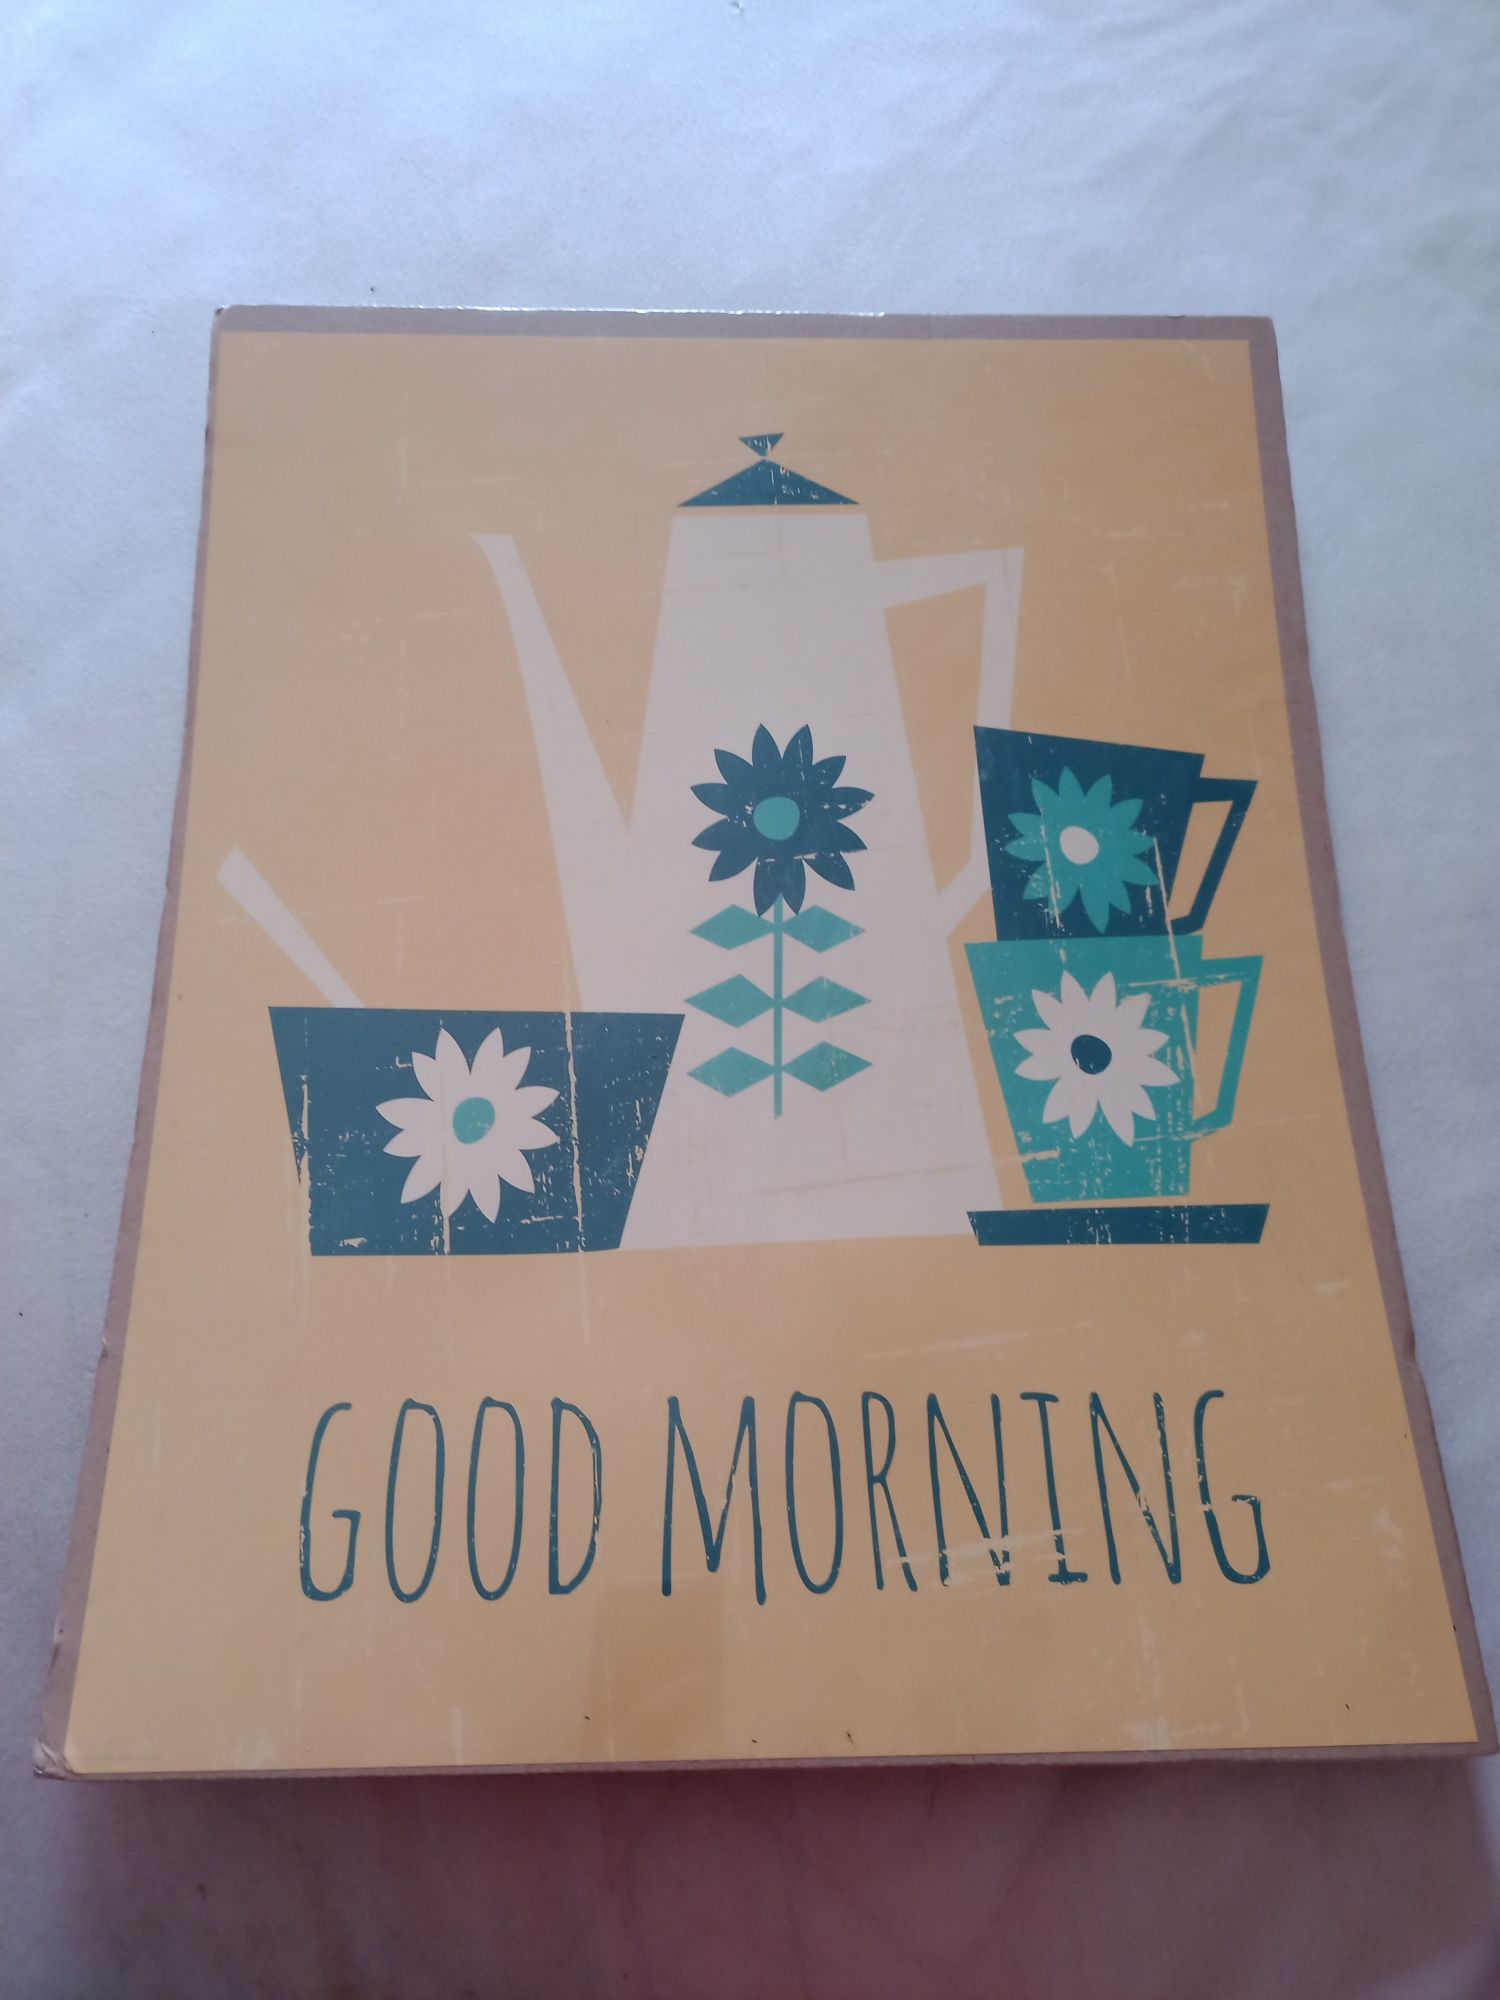 Plakat "Good Morning", dekoracja, Ikea